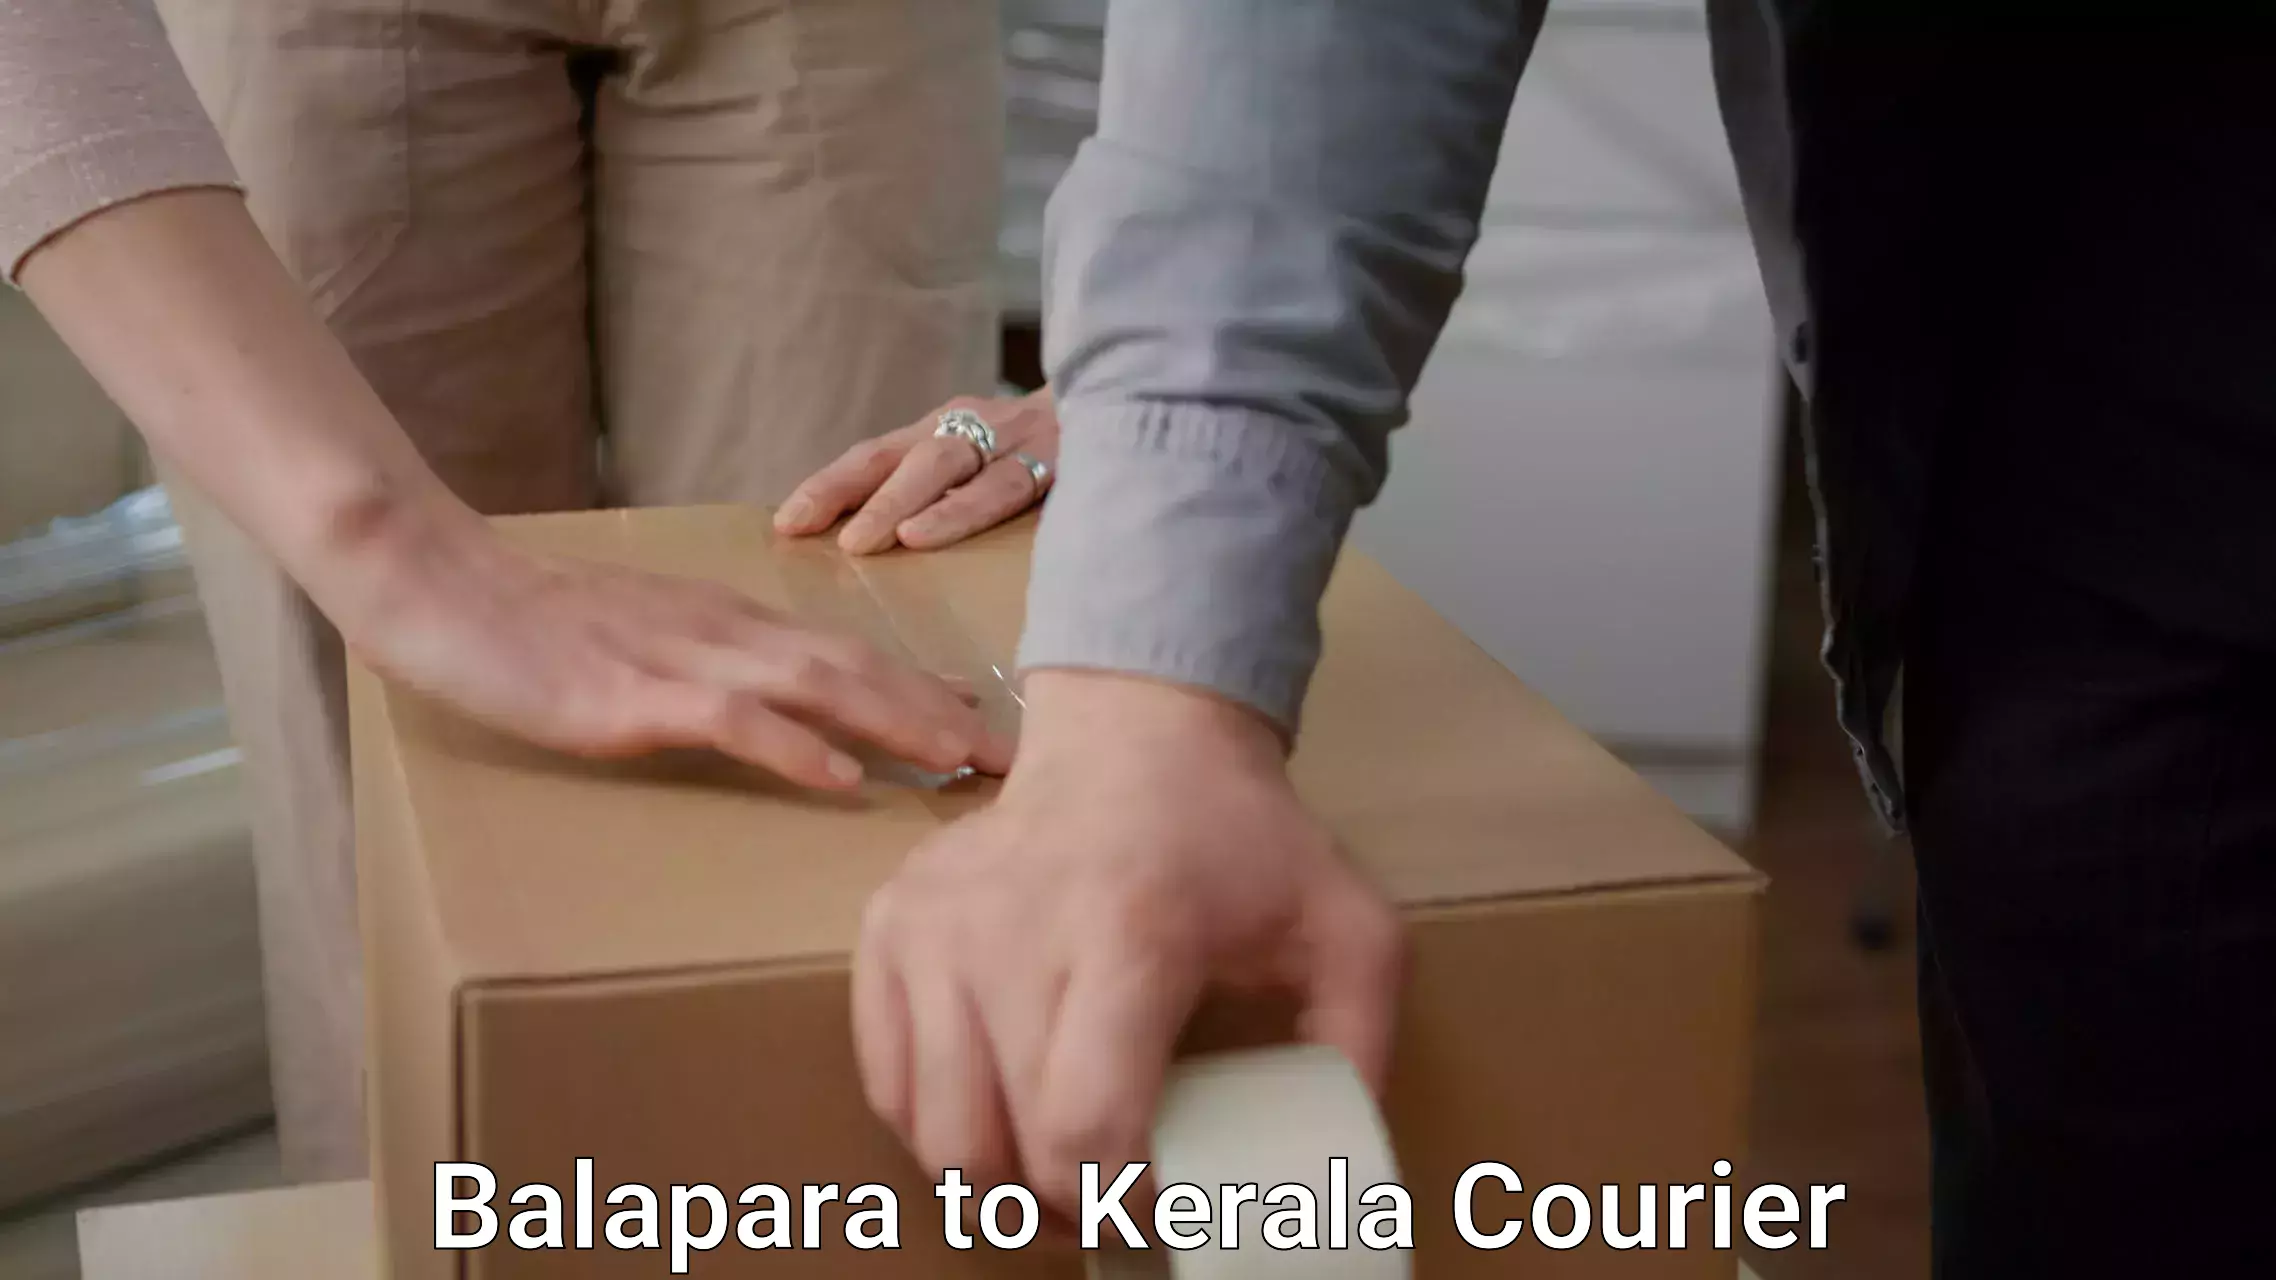 Furniture moving service Balapara to Kochi